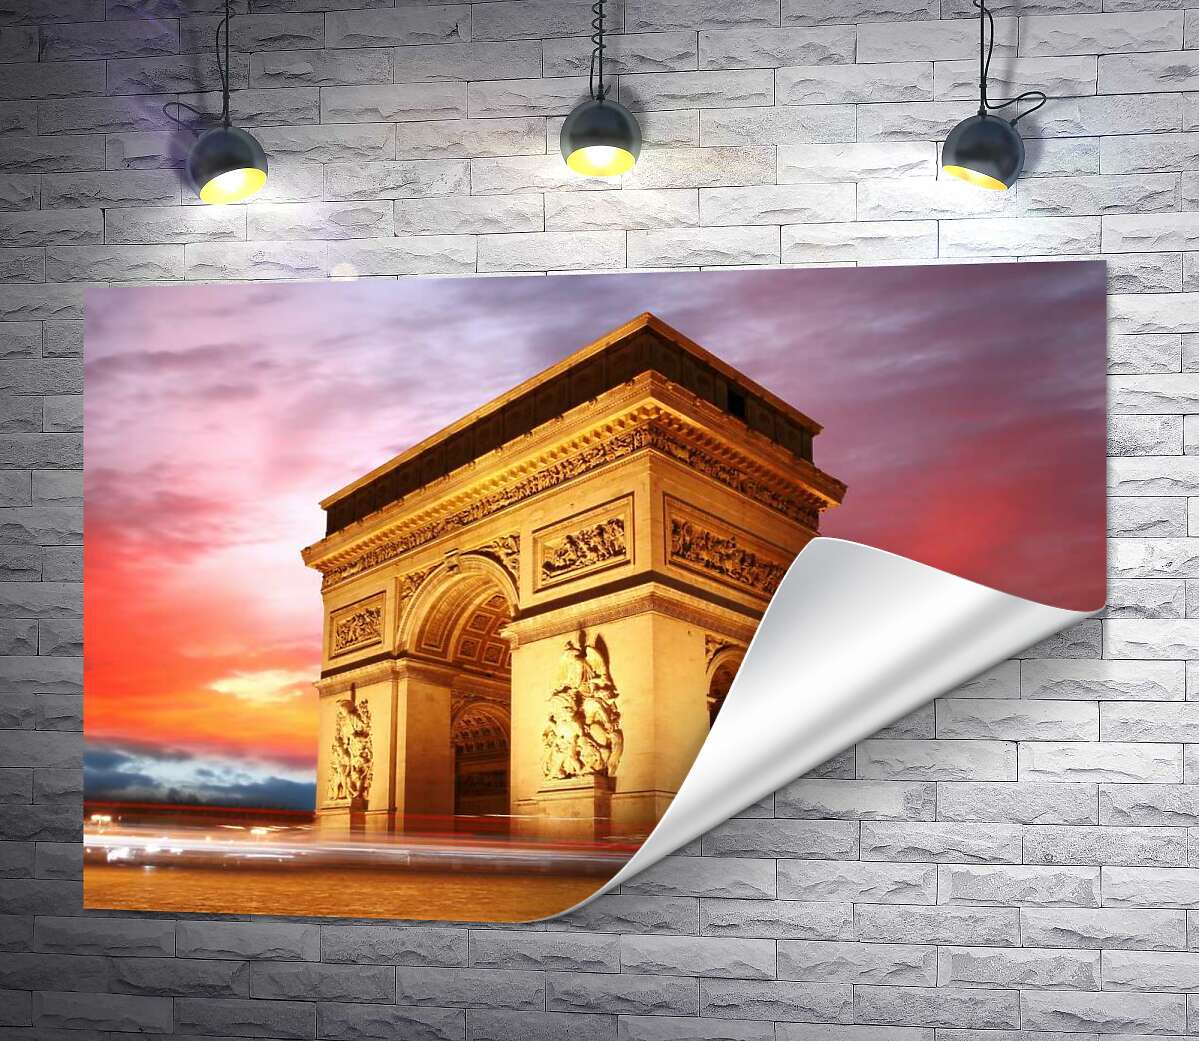 друк Велич Тріумфальної арки (Arc de Triomphe de l'Étoile) у Парижі